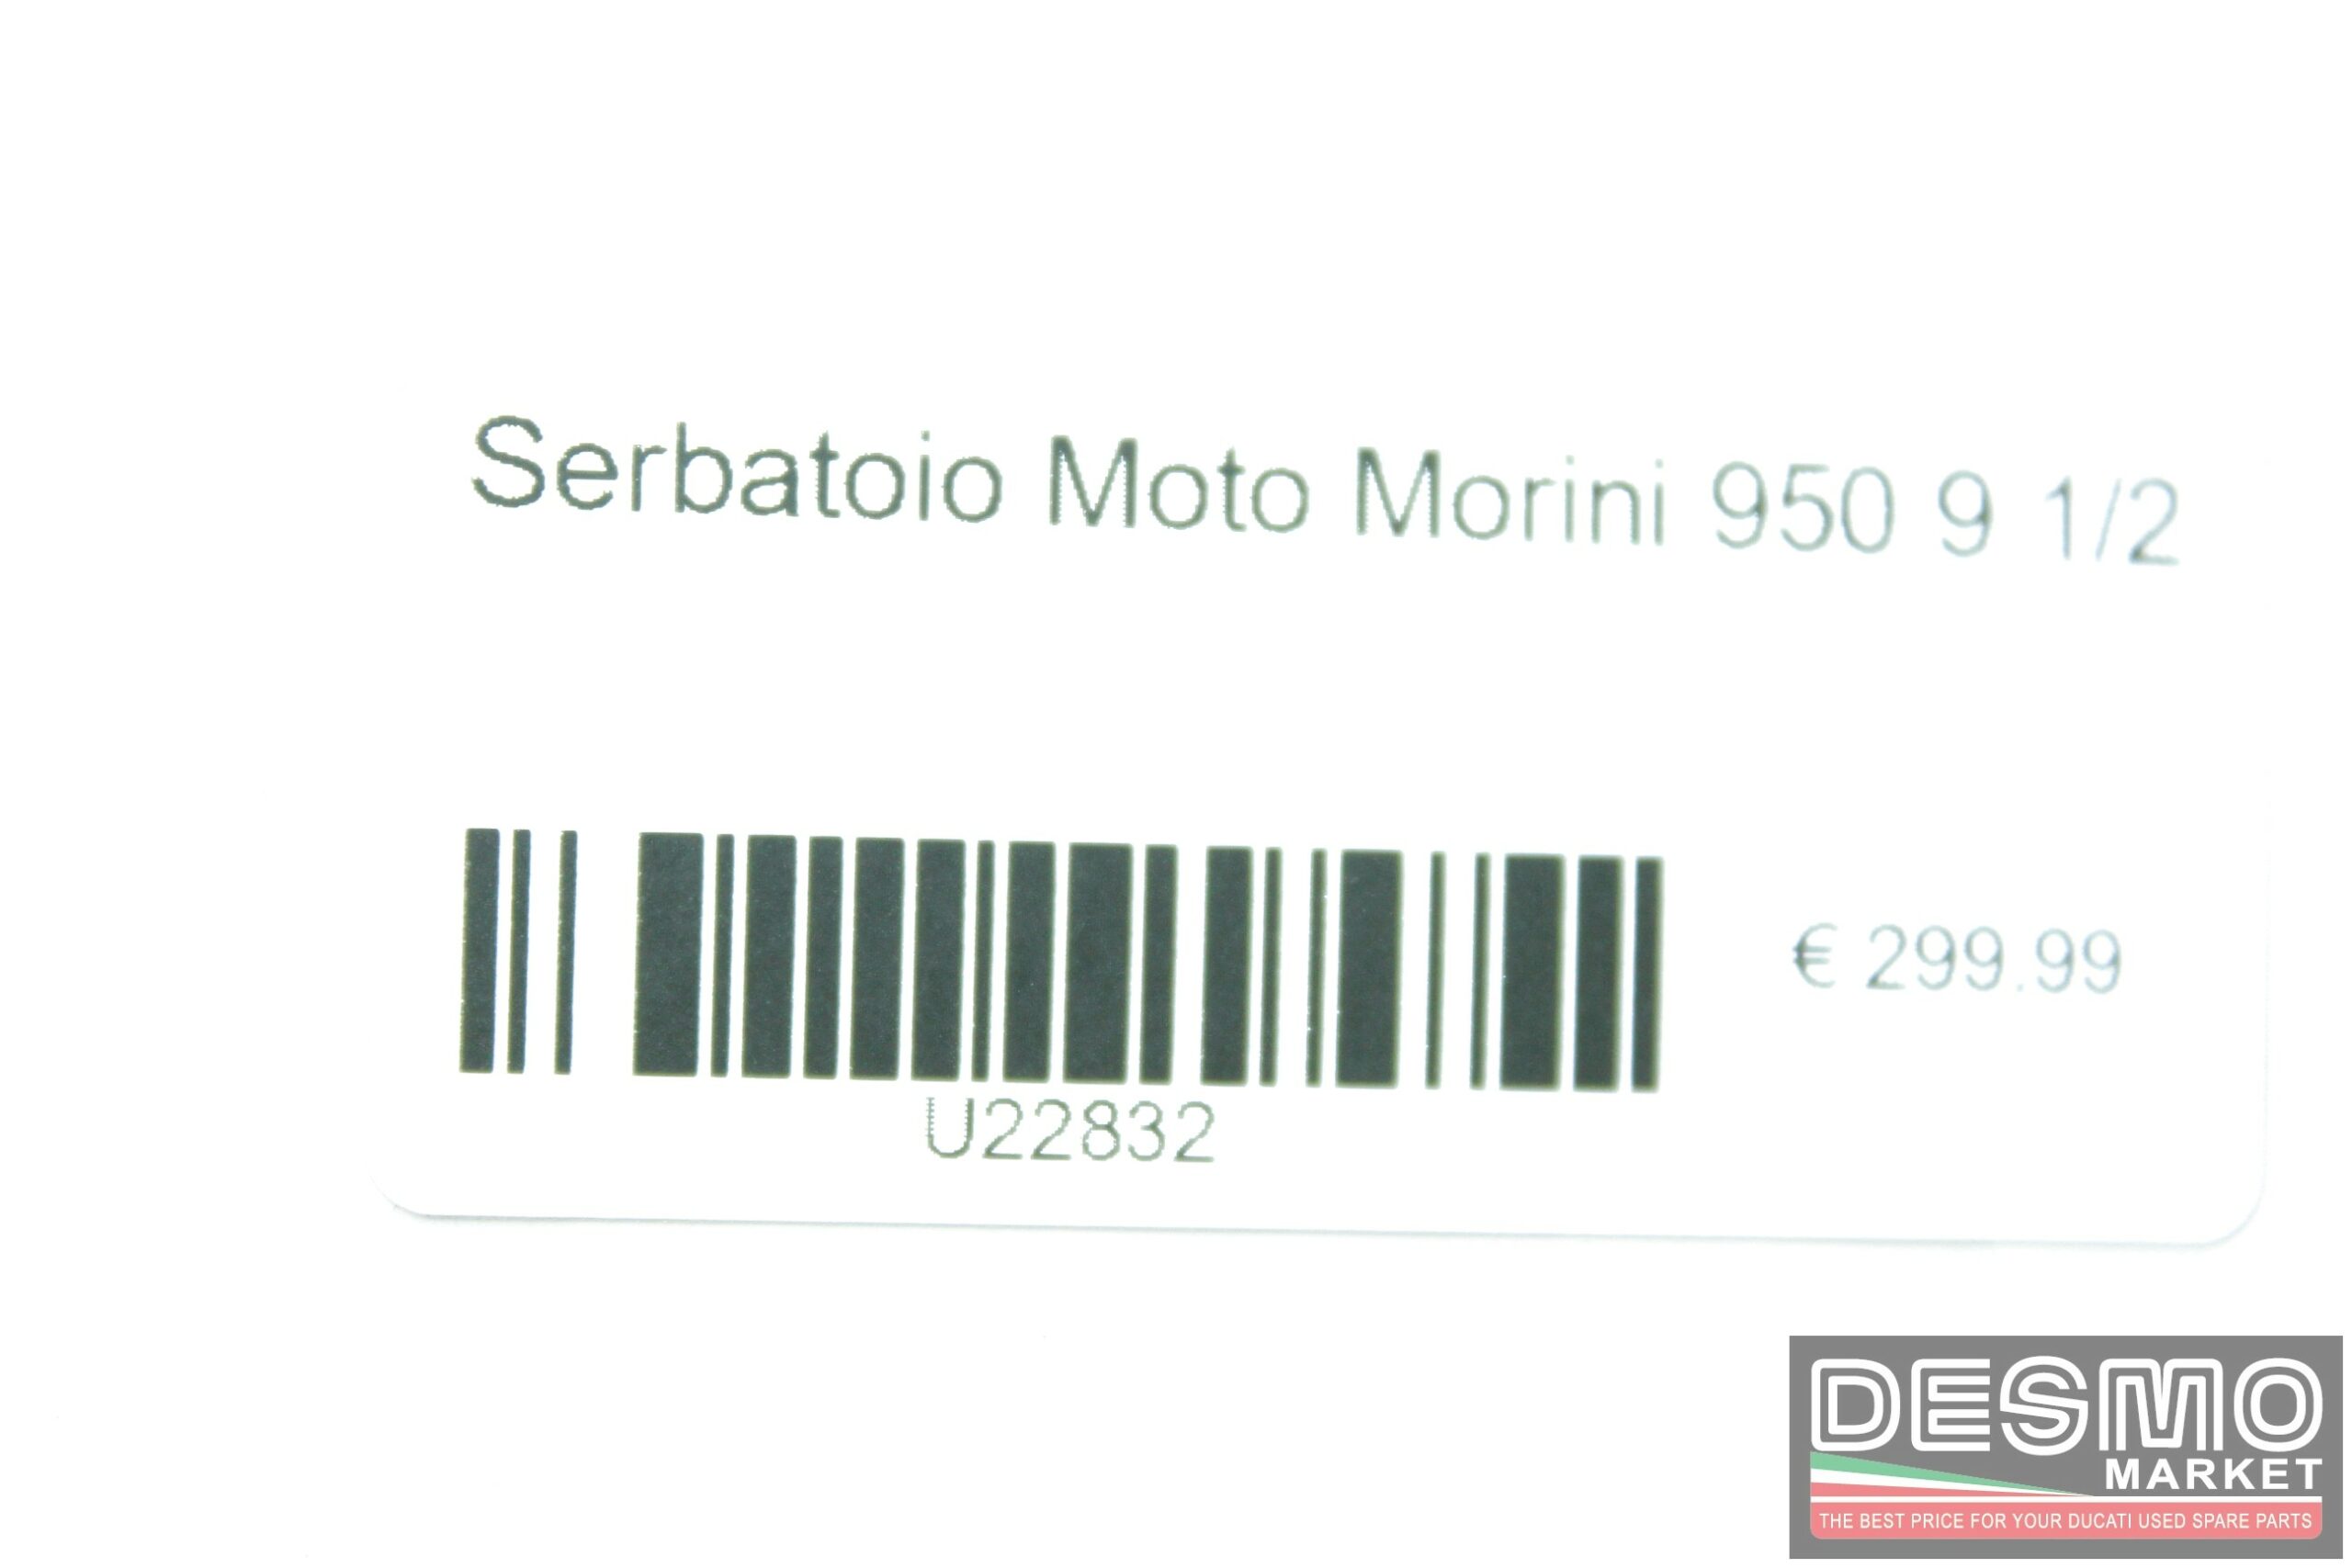 Serbatoio Moto Morini 950 9 1/2